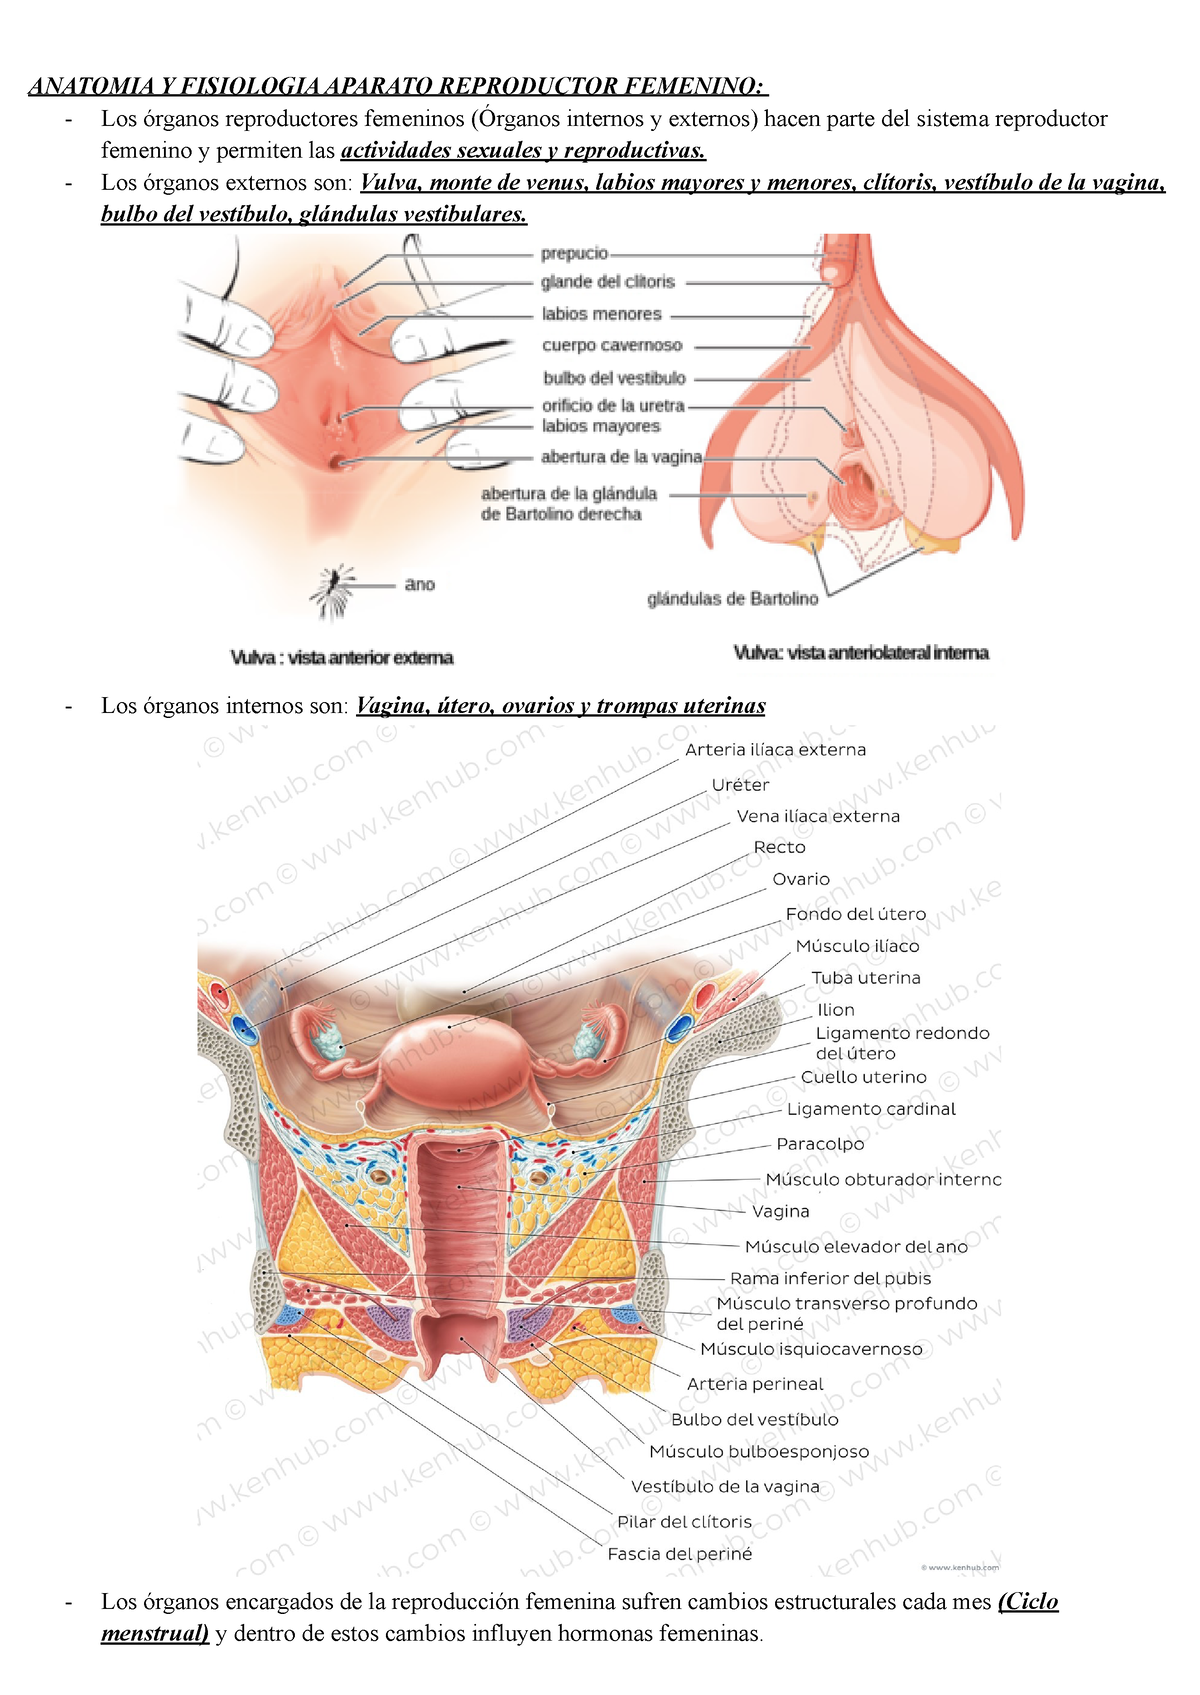 Anatomia Femenina Anatomia Y Fisiologia Aparato Reproductor Femenino Los órganos 5403